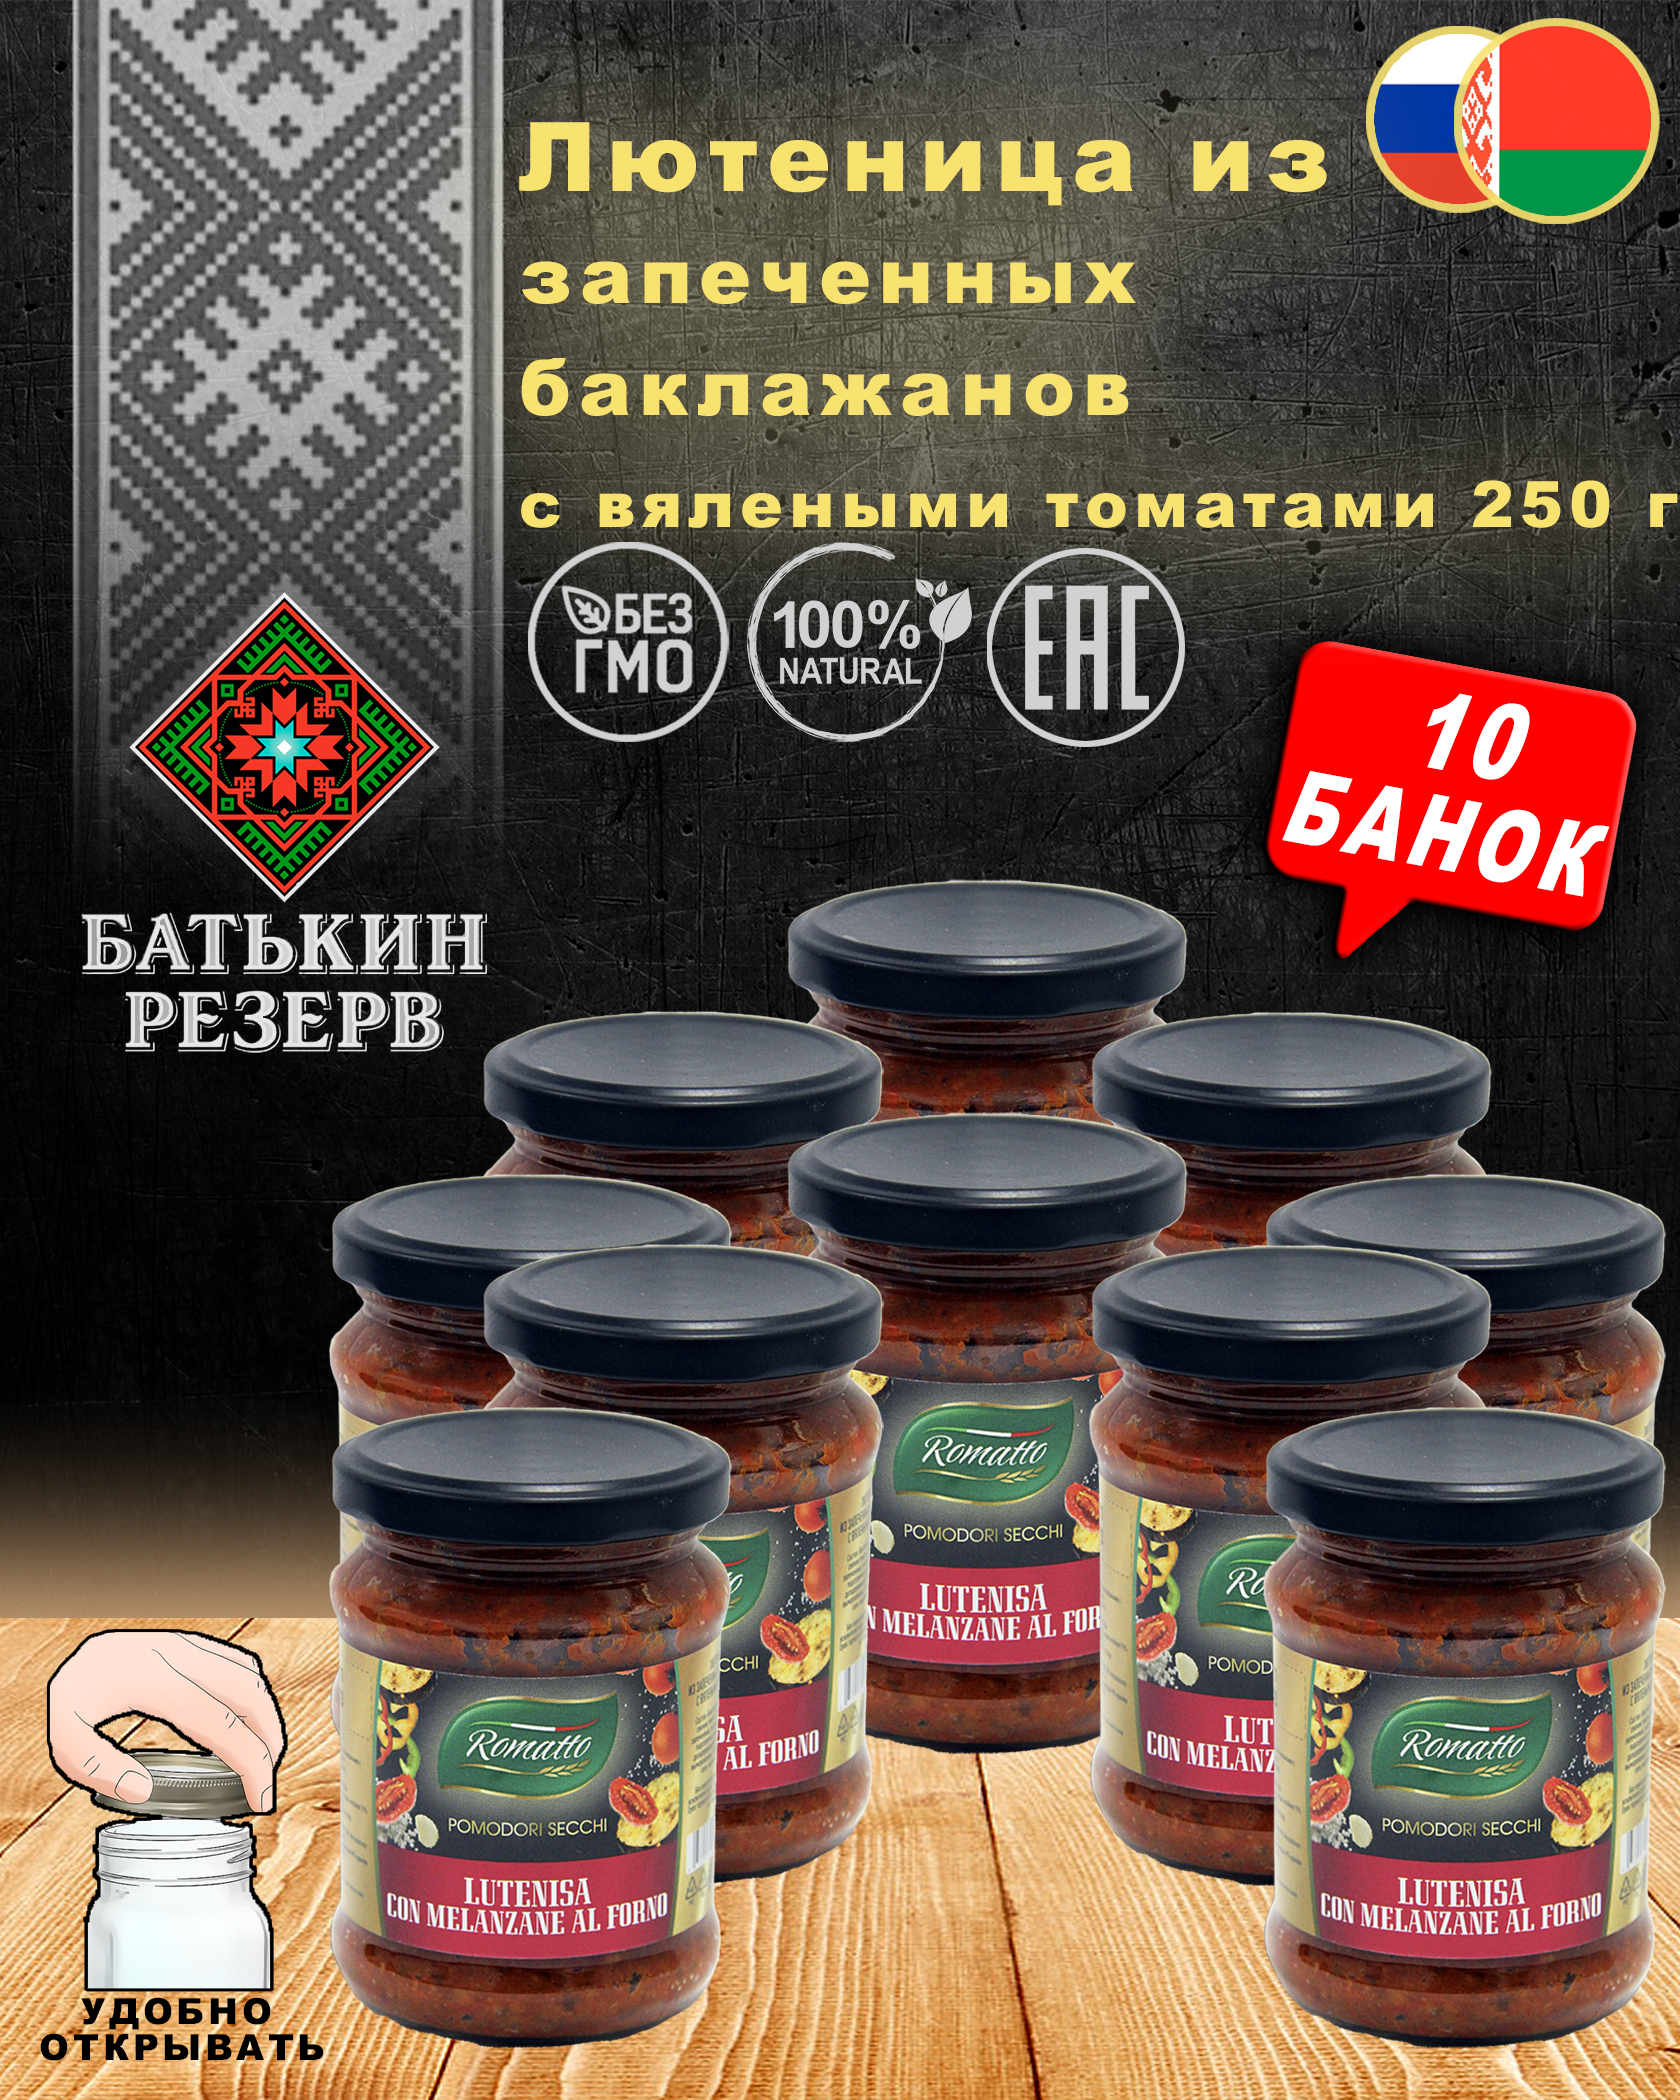 Лютеница из запеченных баклажанов с вялеными томатами Romatto, ТУ, 10 шт. по 250 г